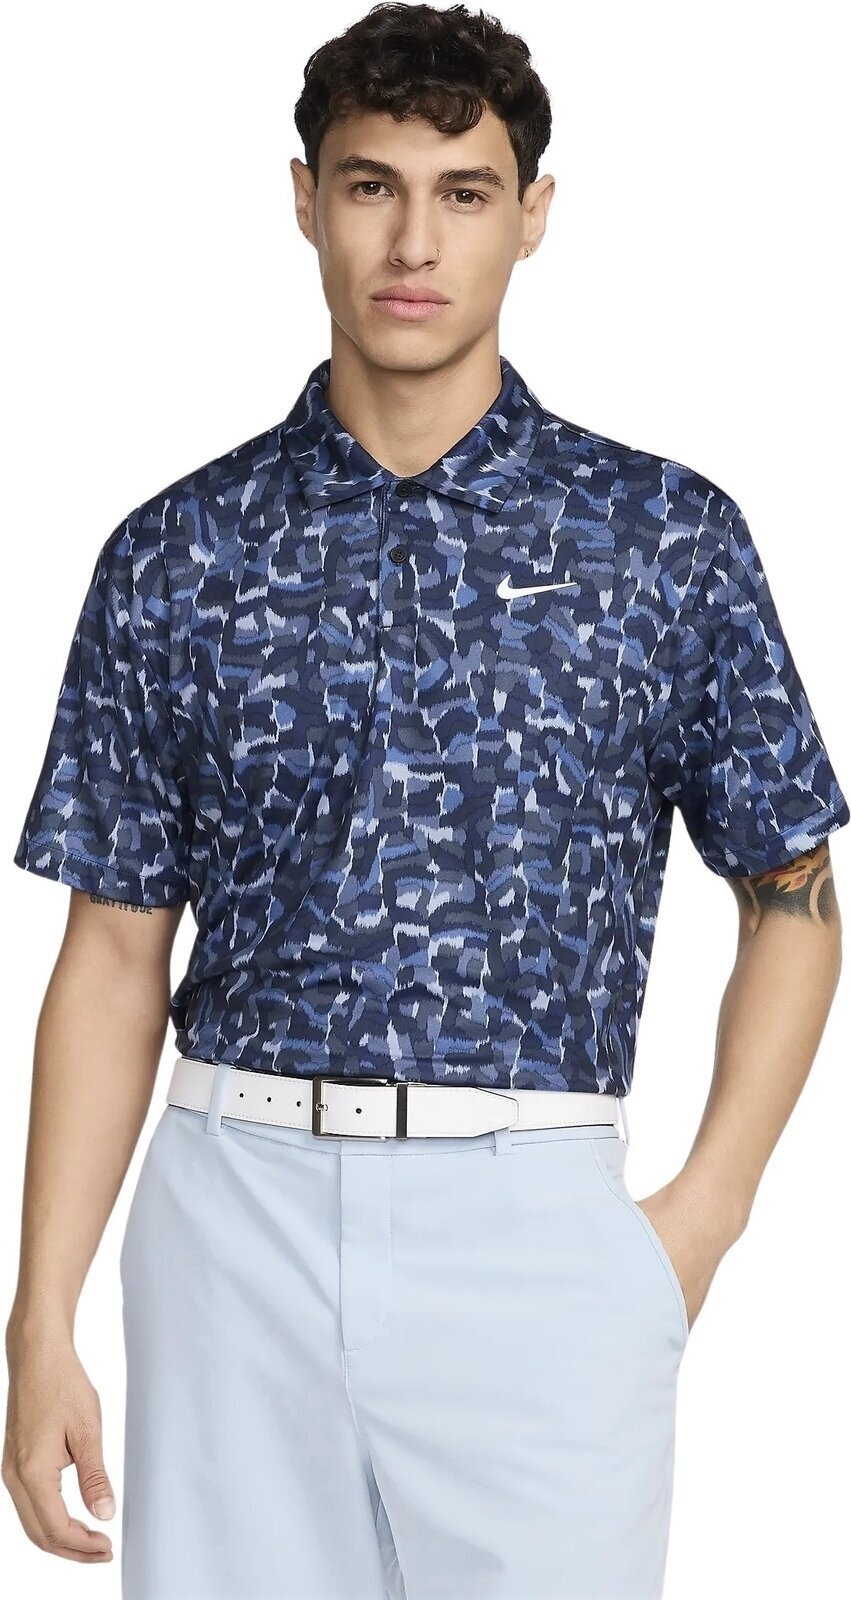 Camiseta polo Nike Dri-Fit Tour Confetti Print Mens Polo Ashen Slate/White L Camiseta polo